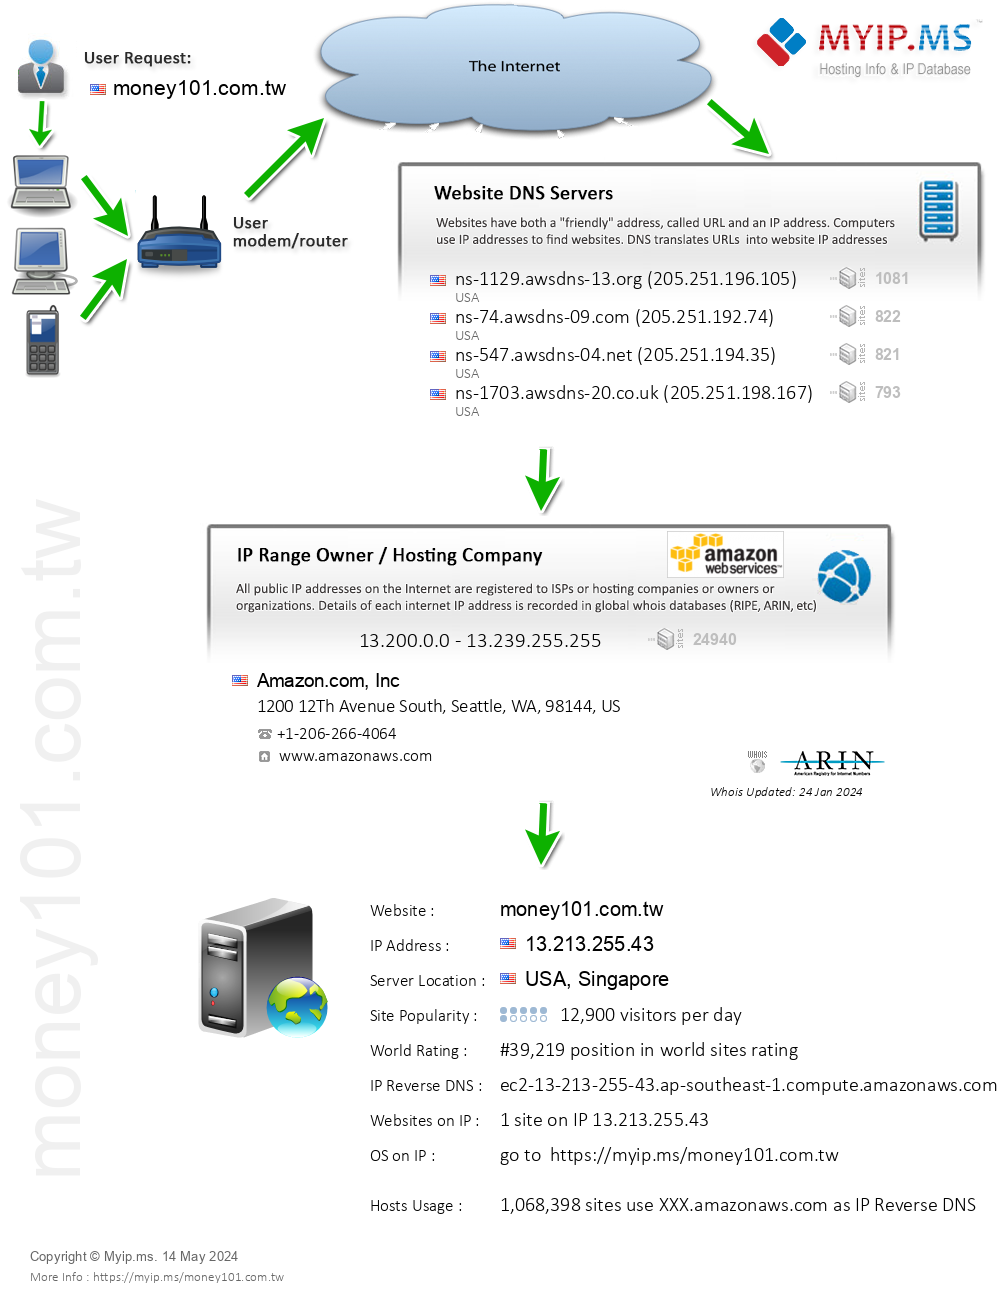 Money101.com.tw - Website Hosting Visual IP Diagram